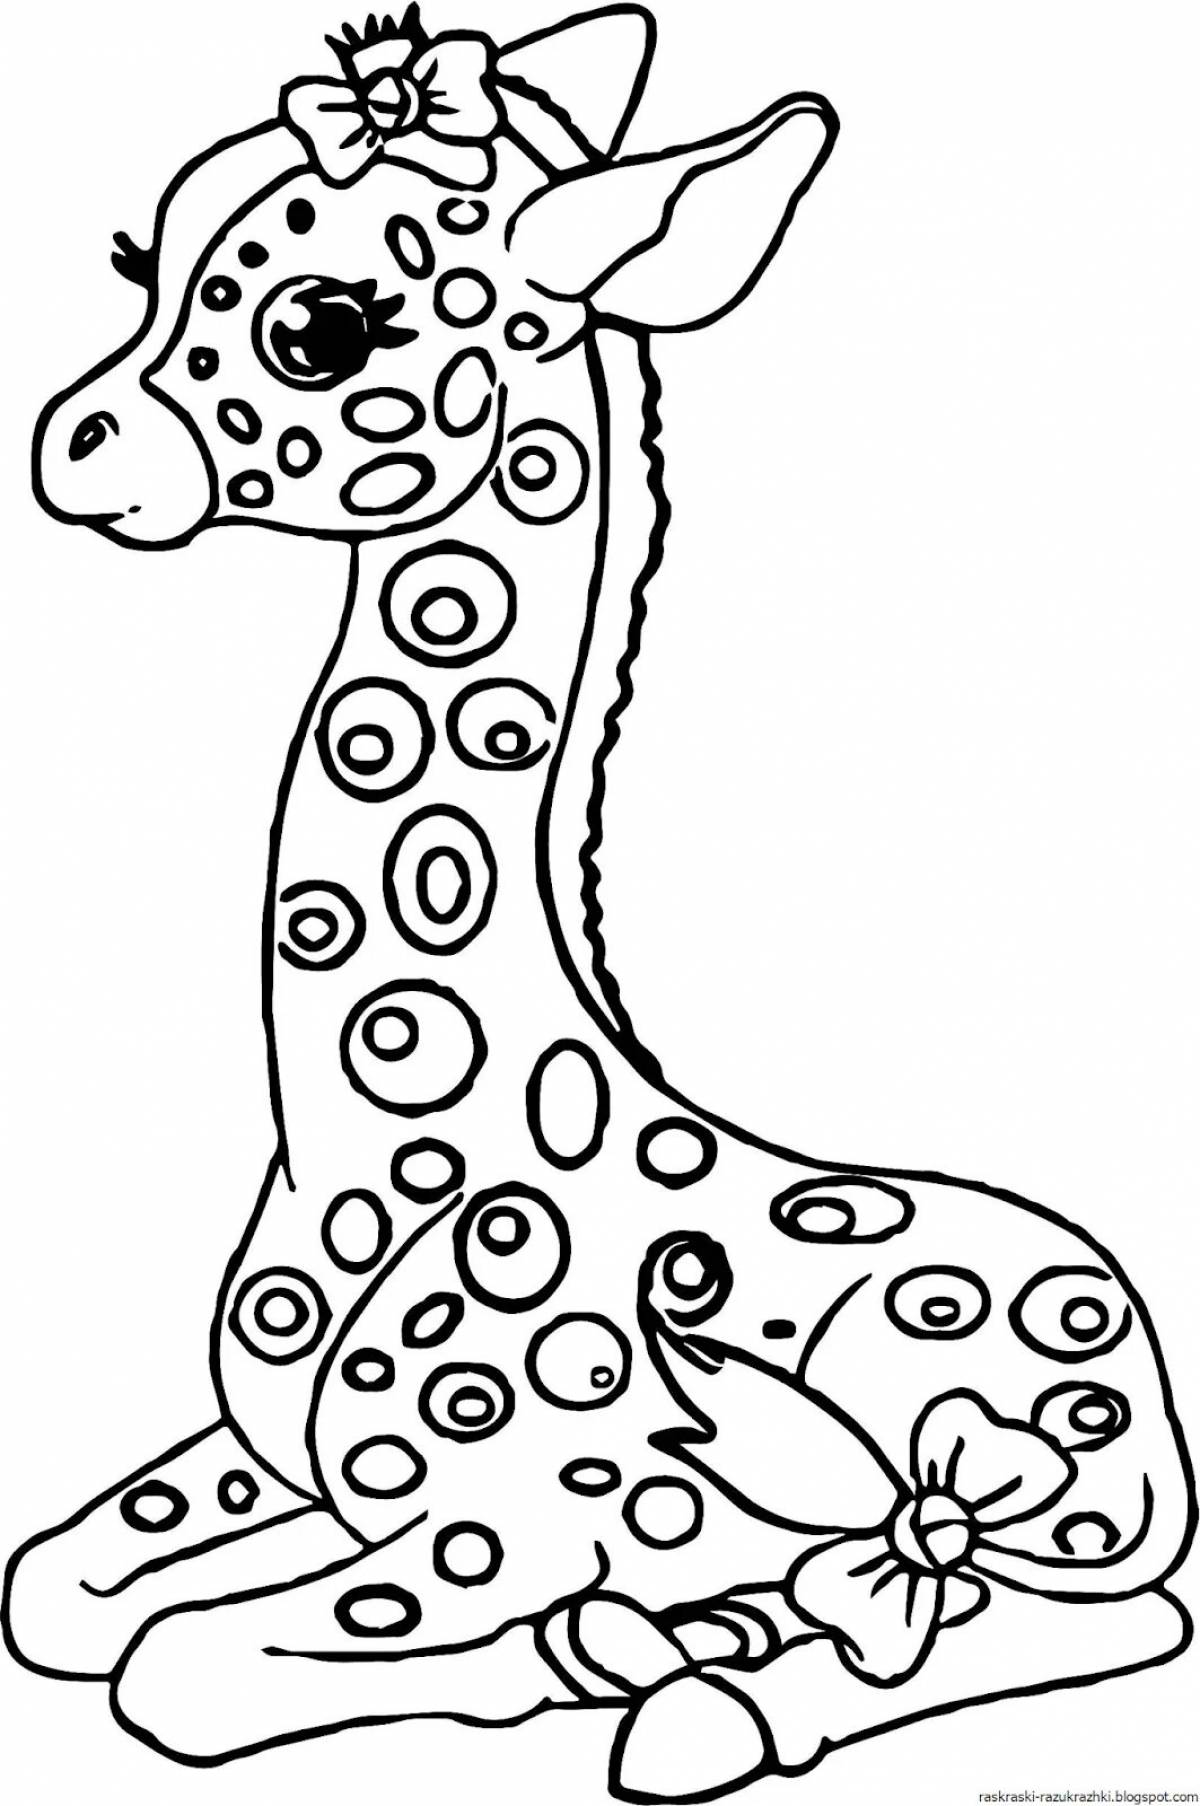 Великолепный рисунок жирафа для детей